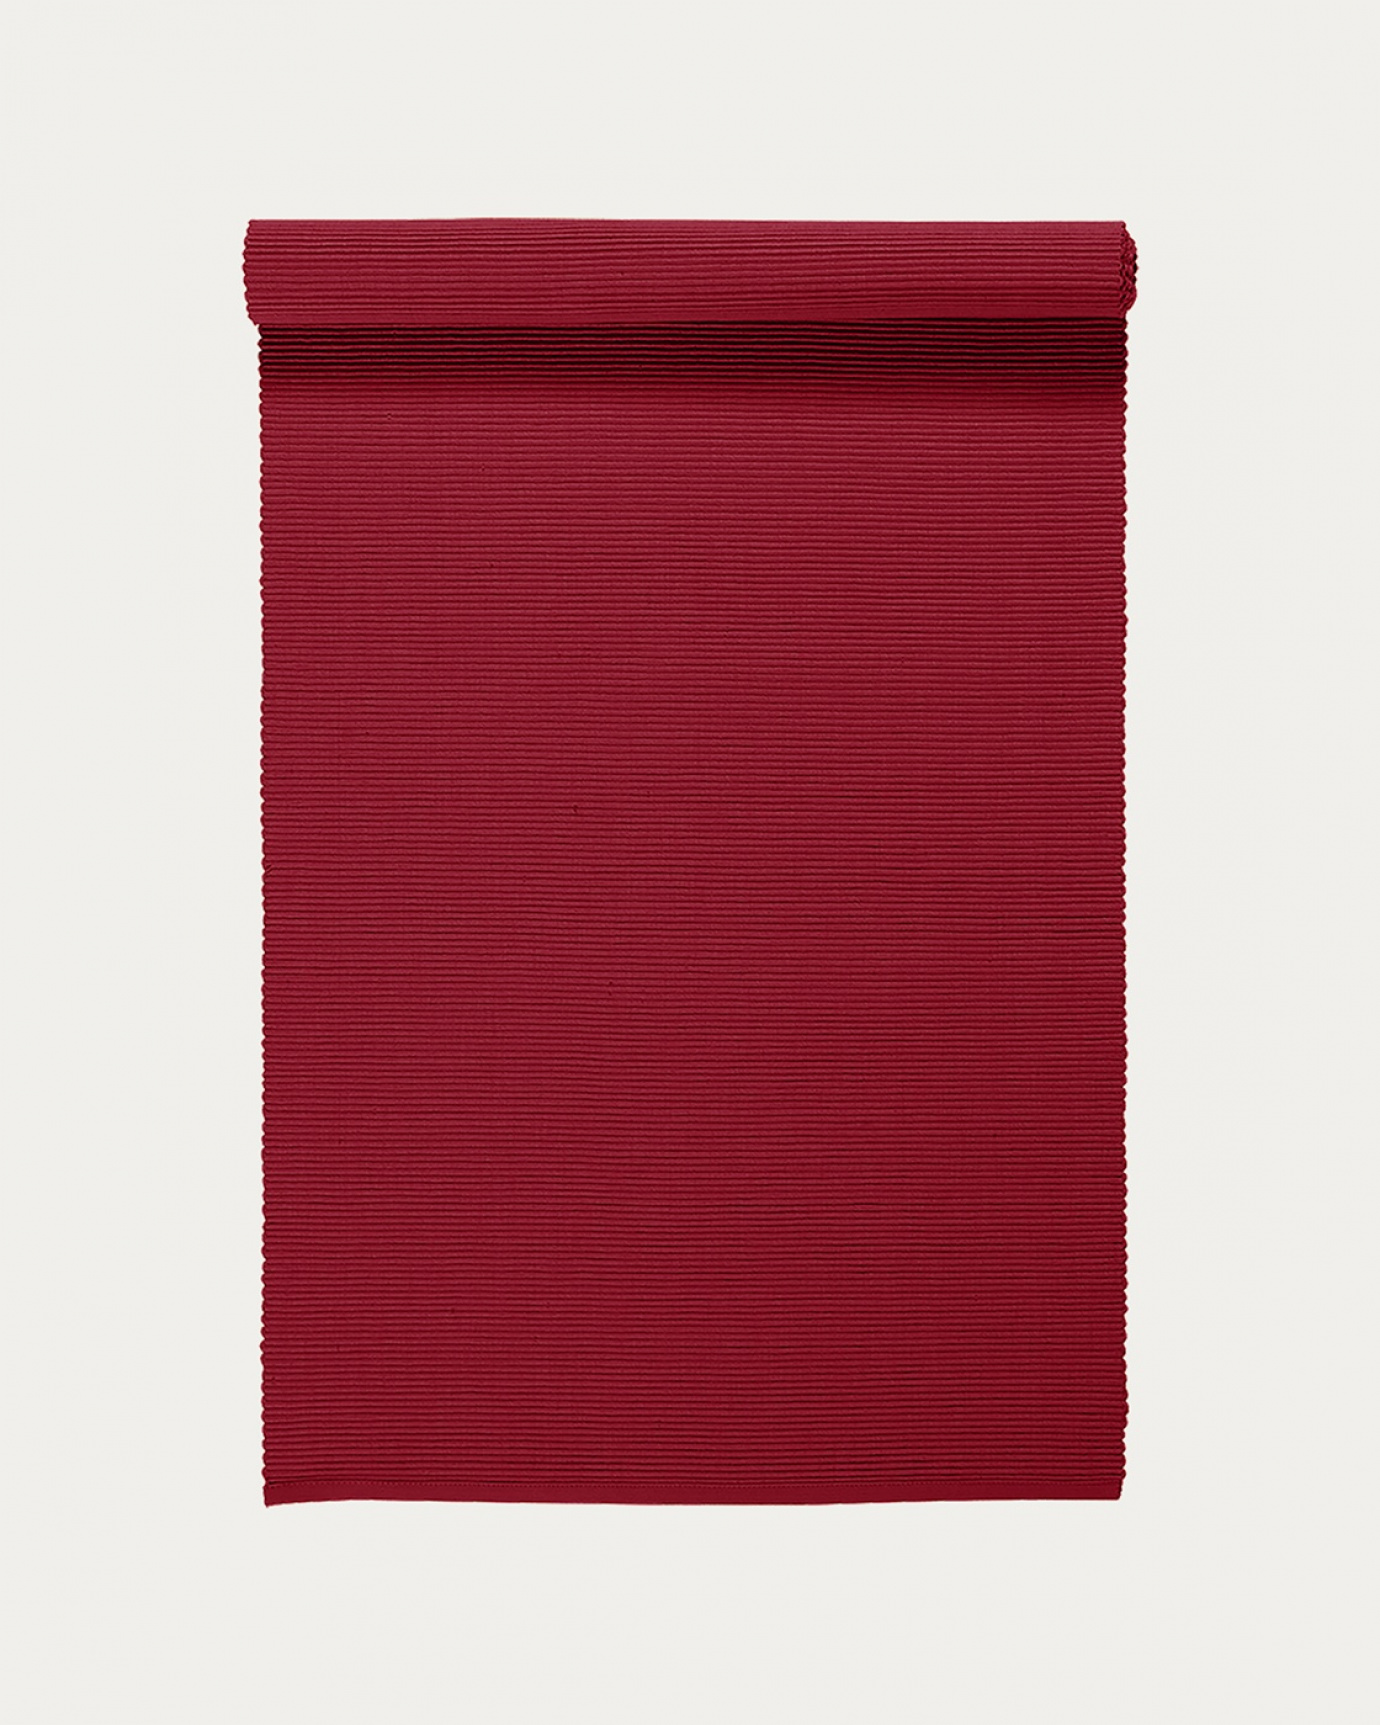 Produktbild rot UNI Tischläufer aus weicher Baumwolle in Rippenqualität von LINUM DESIGN. Größe 45x150 cm.